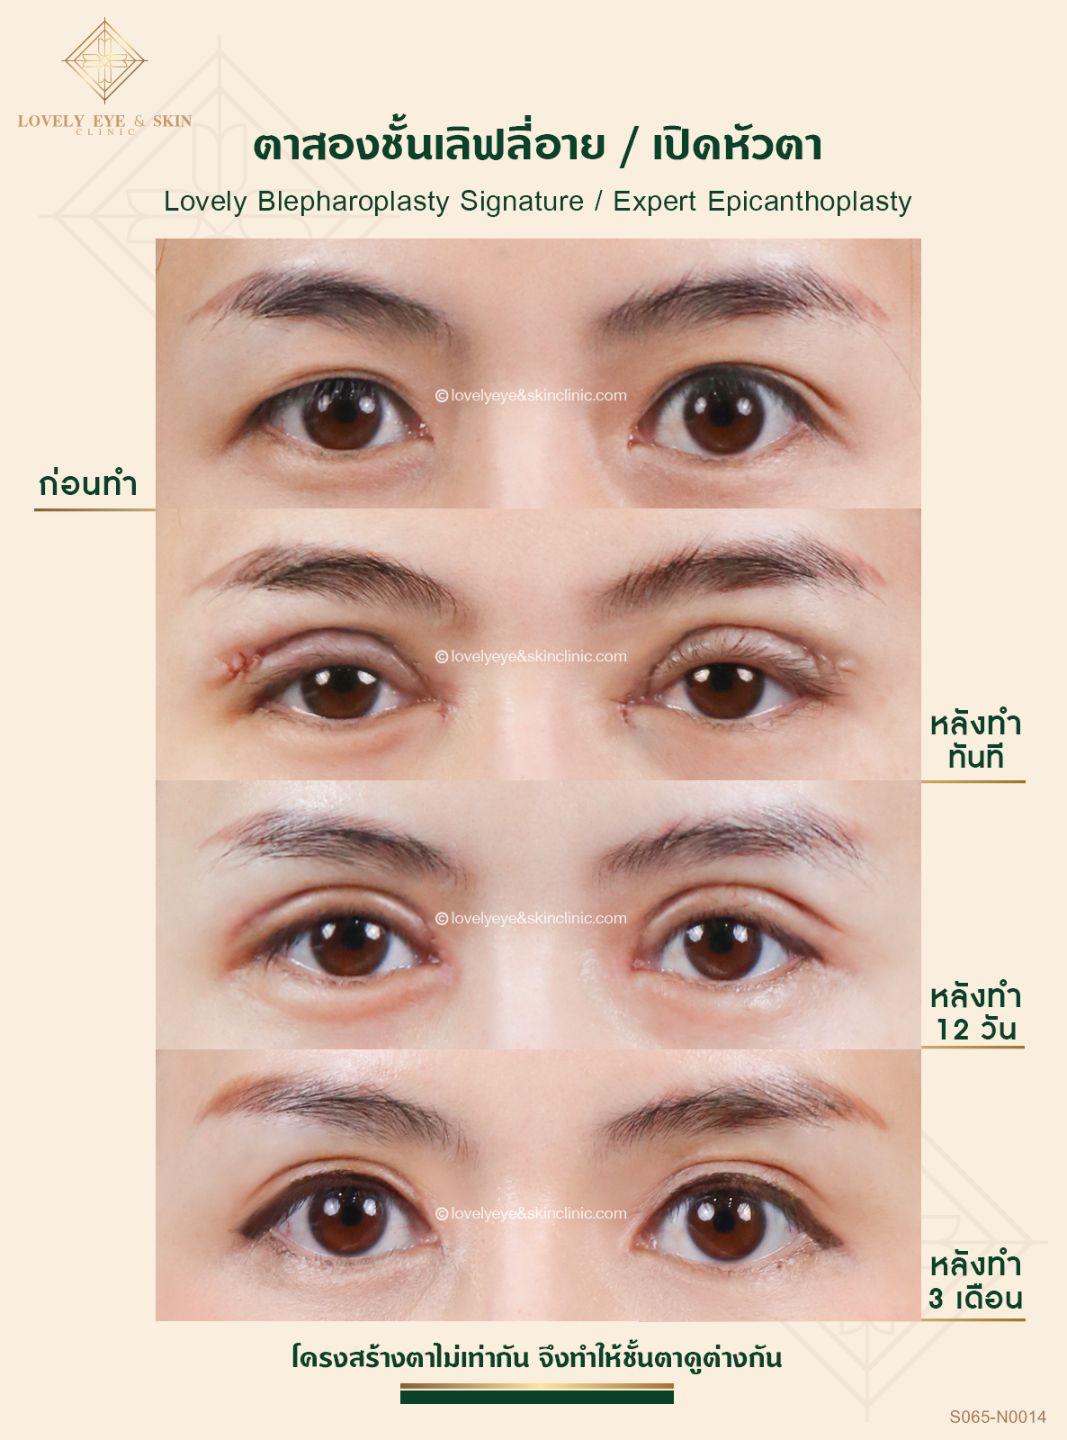 รวม 10 เรื่องที่คนผิดหวังจาการทำตาสองชั้น พร้อมวิธีแก้ | Lovely Eye Clinic